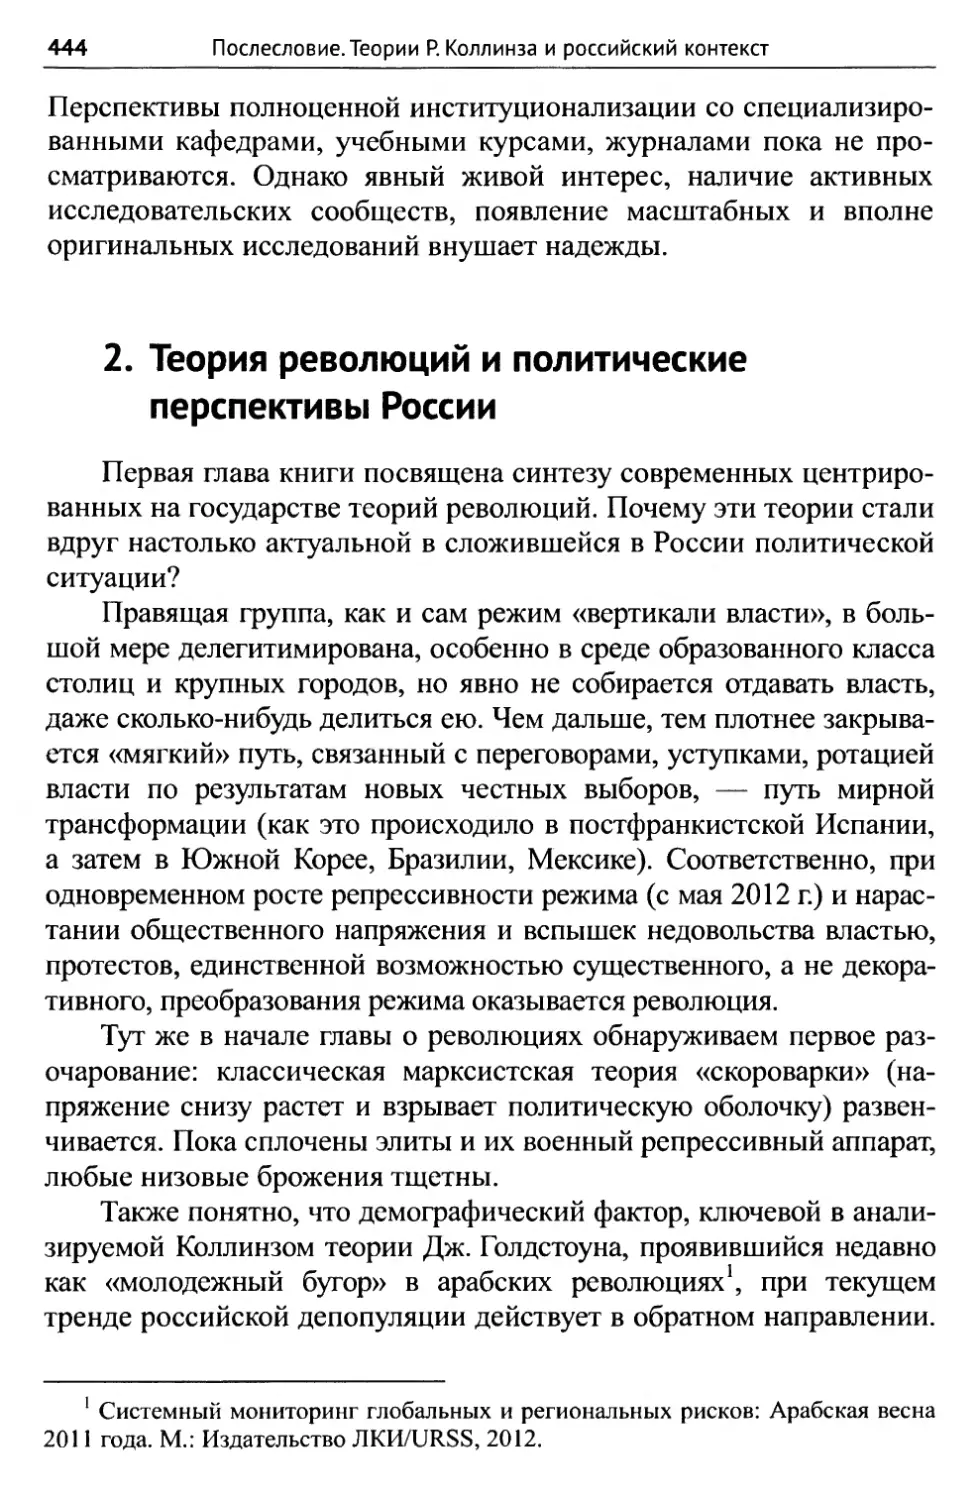 2. Теория революций и политические перспективы России